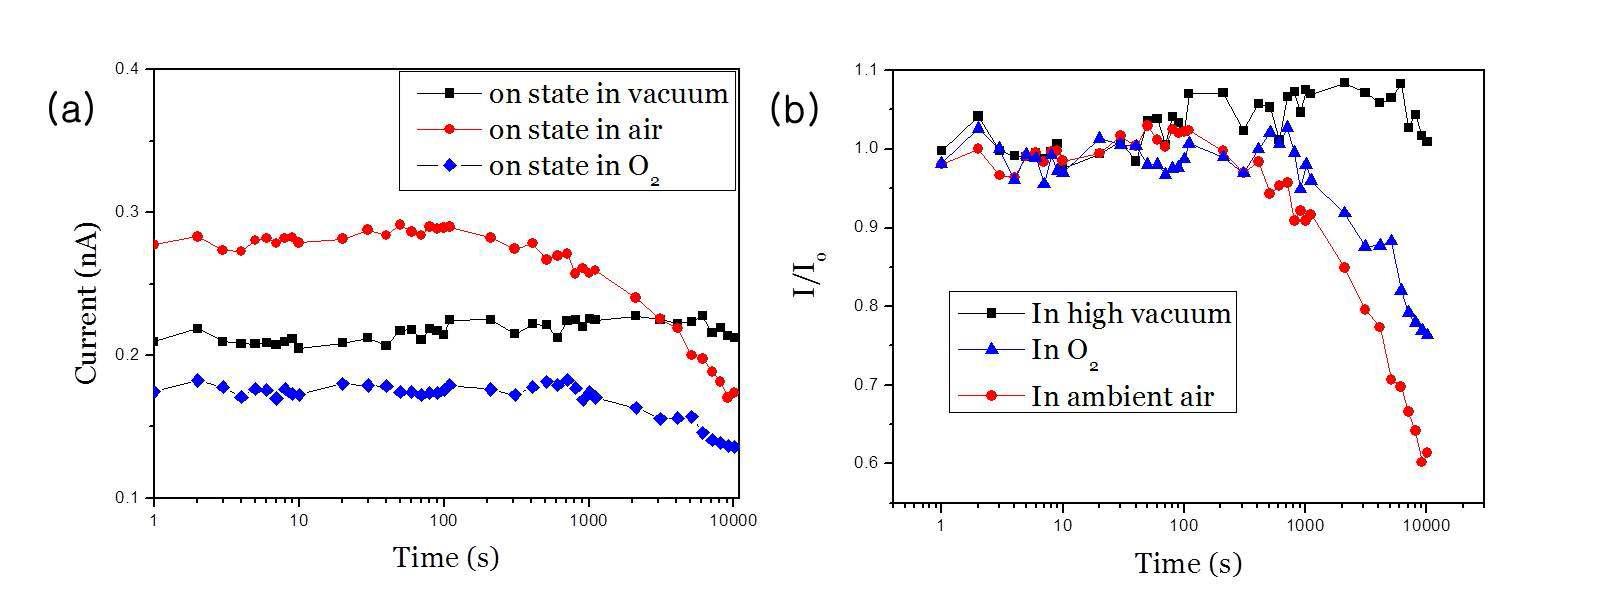 대기, 진공, 산소 분위기에서 MgO-NiO 코어-쉘 구조 나노와이어의 on 상태 retention 비교를 위한 (a) 실제 데이터 및 (b) 상대적 비교 데이터